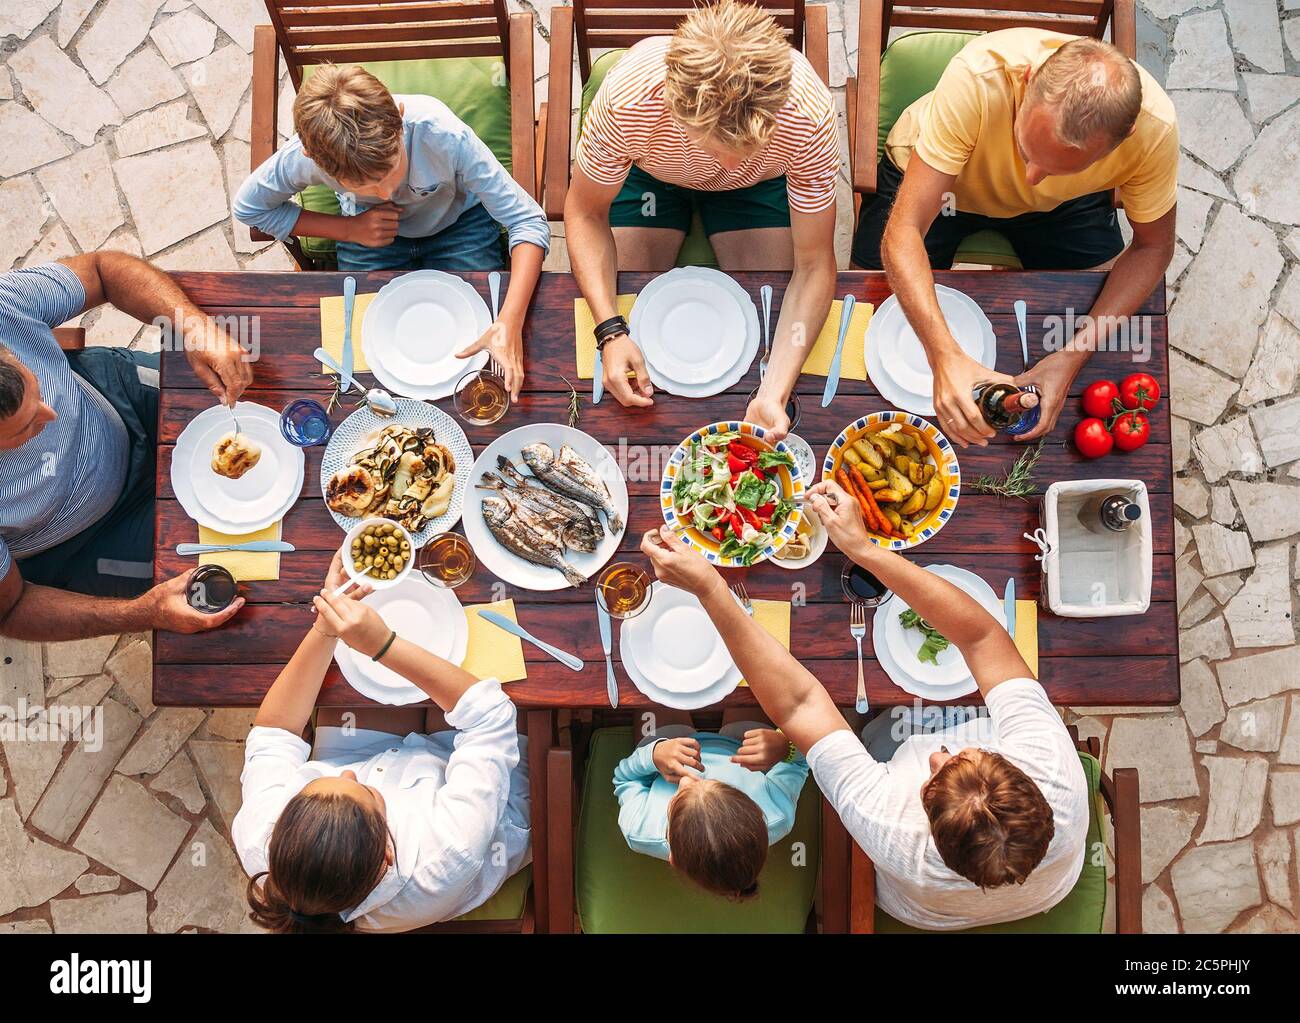 Grande cena multigenerazionale in corso. Immagine vista dall'alto sul tavolo con cibo e mani. Consumo alimentare e concetto di famiglia multigenerazionale ima Foto Stock